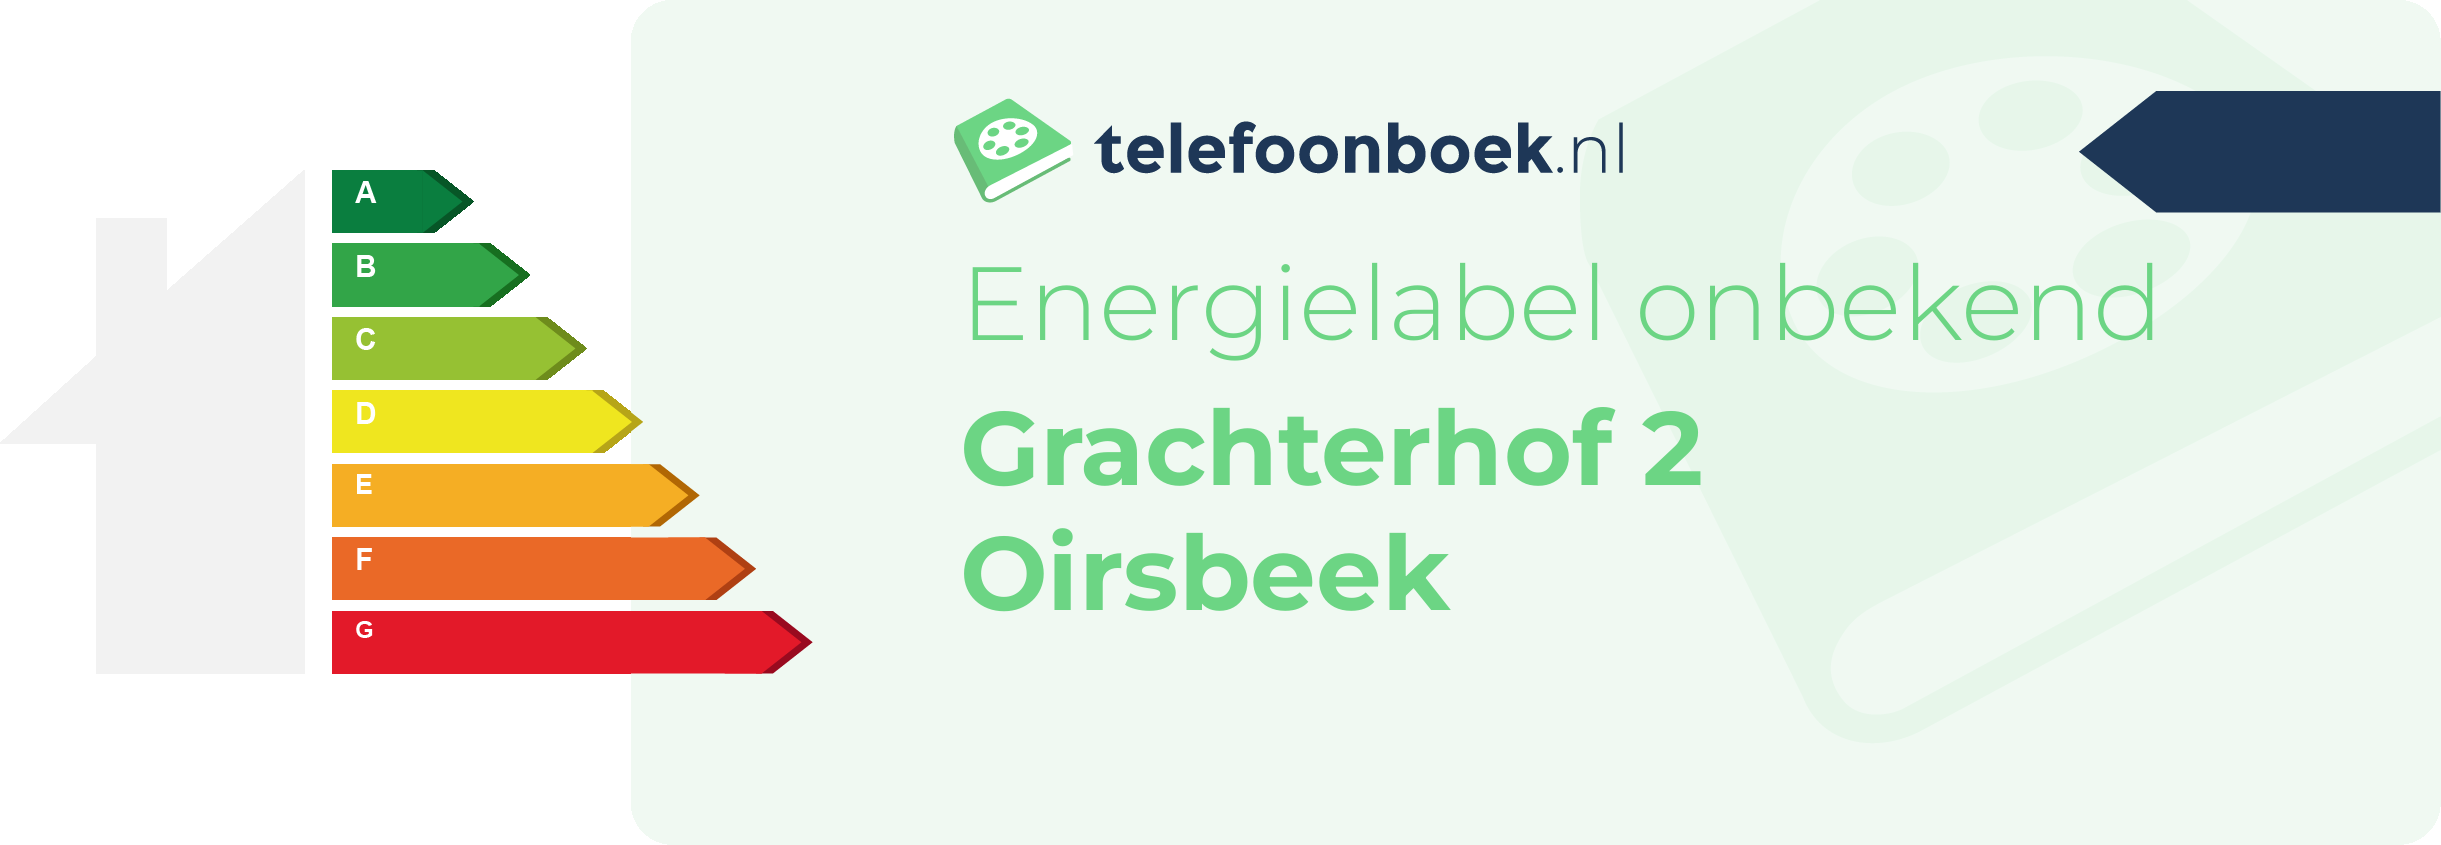 Energielabel Grachterhof 2 Oirsbeek